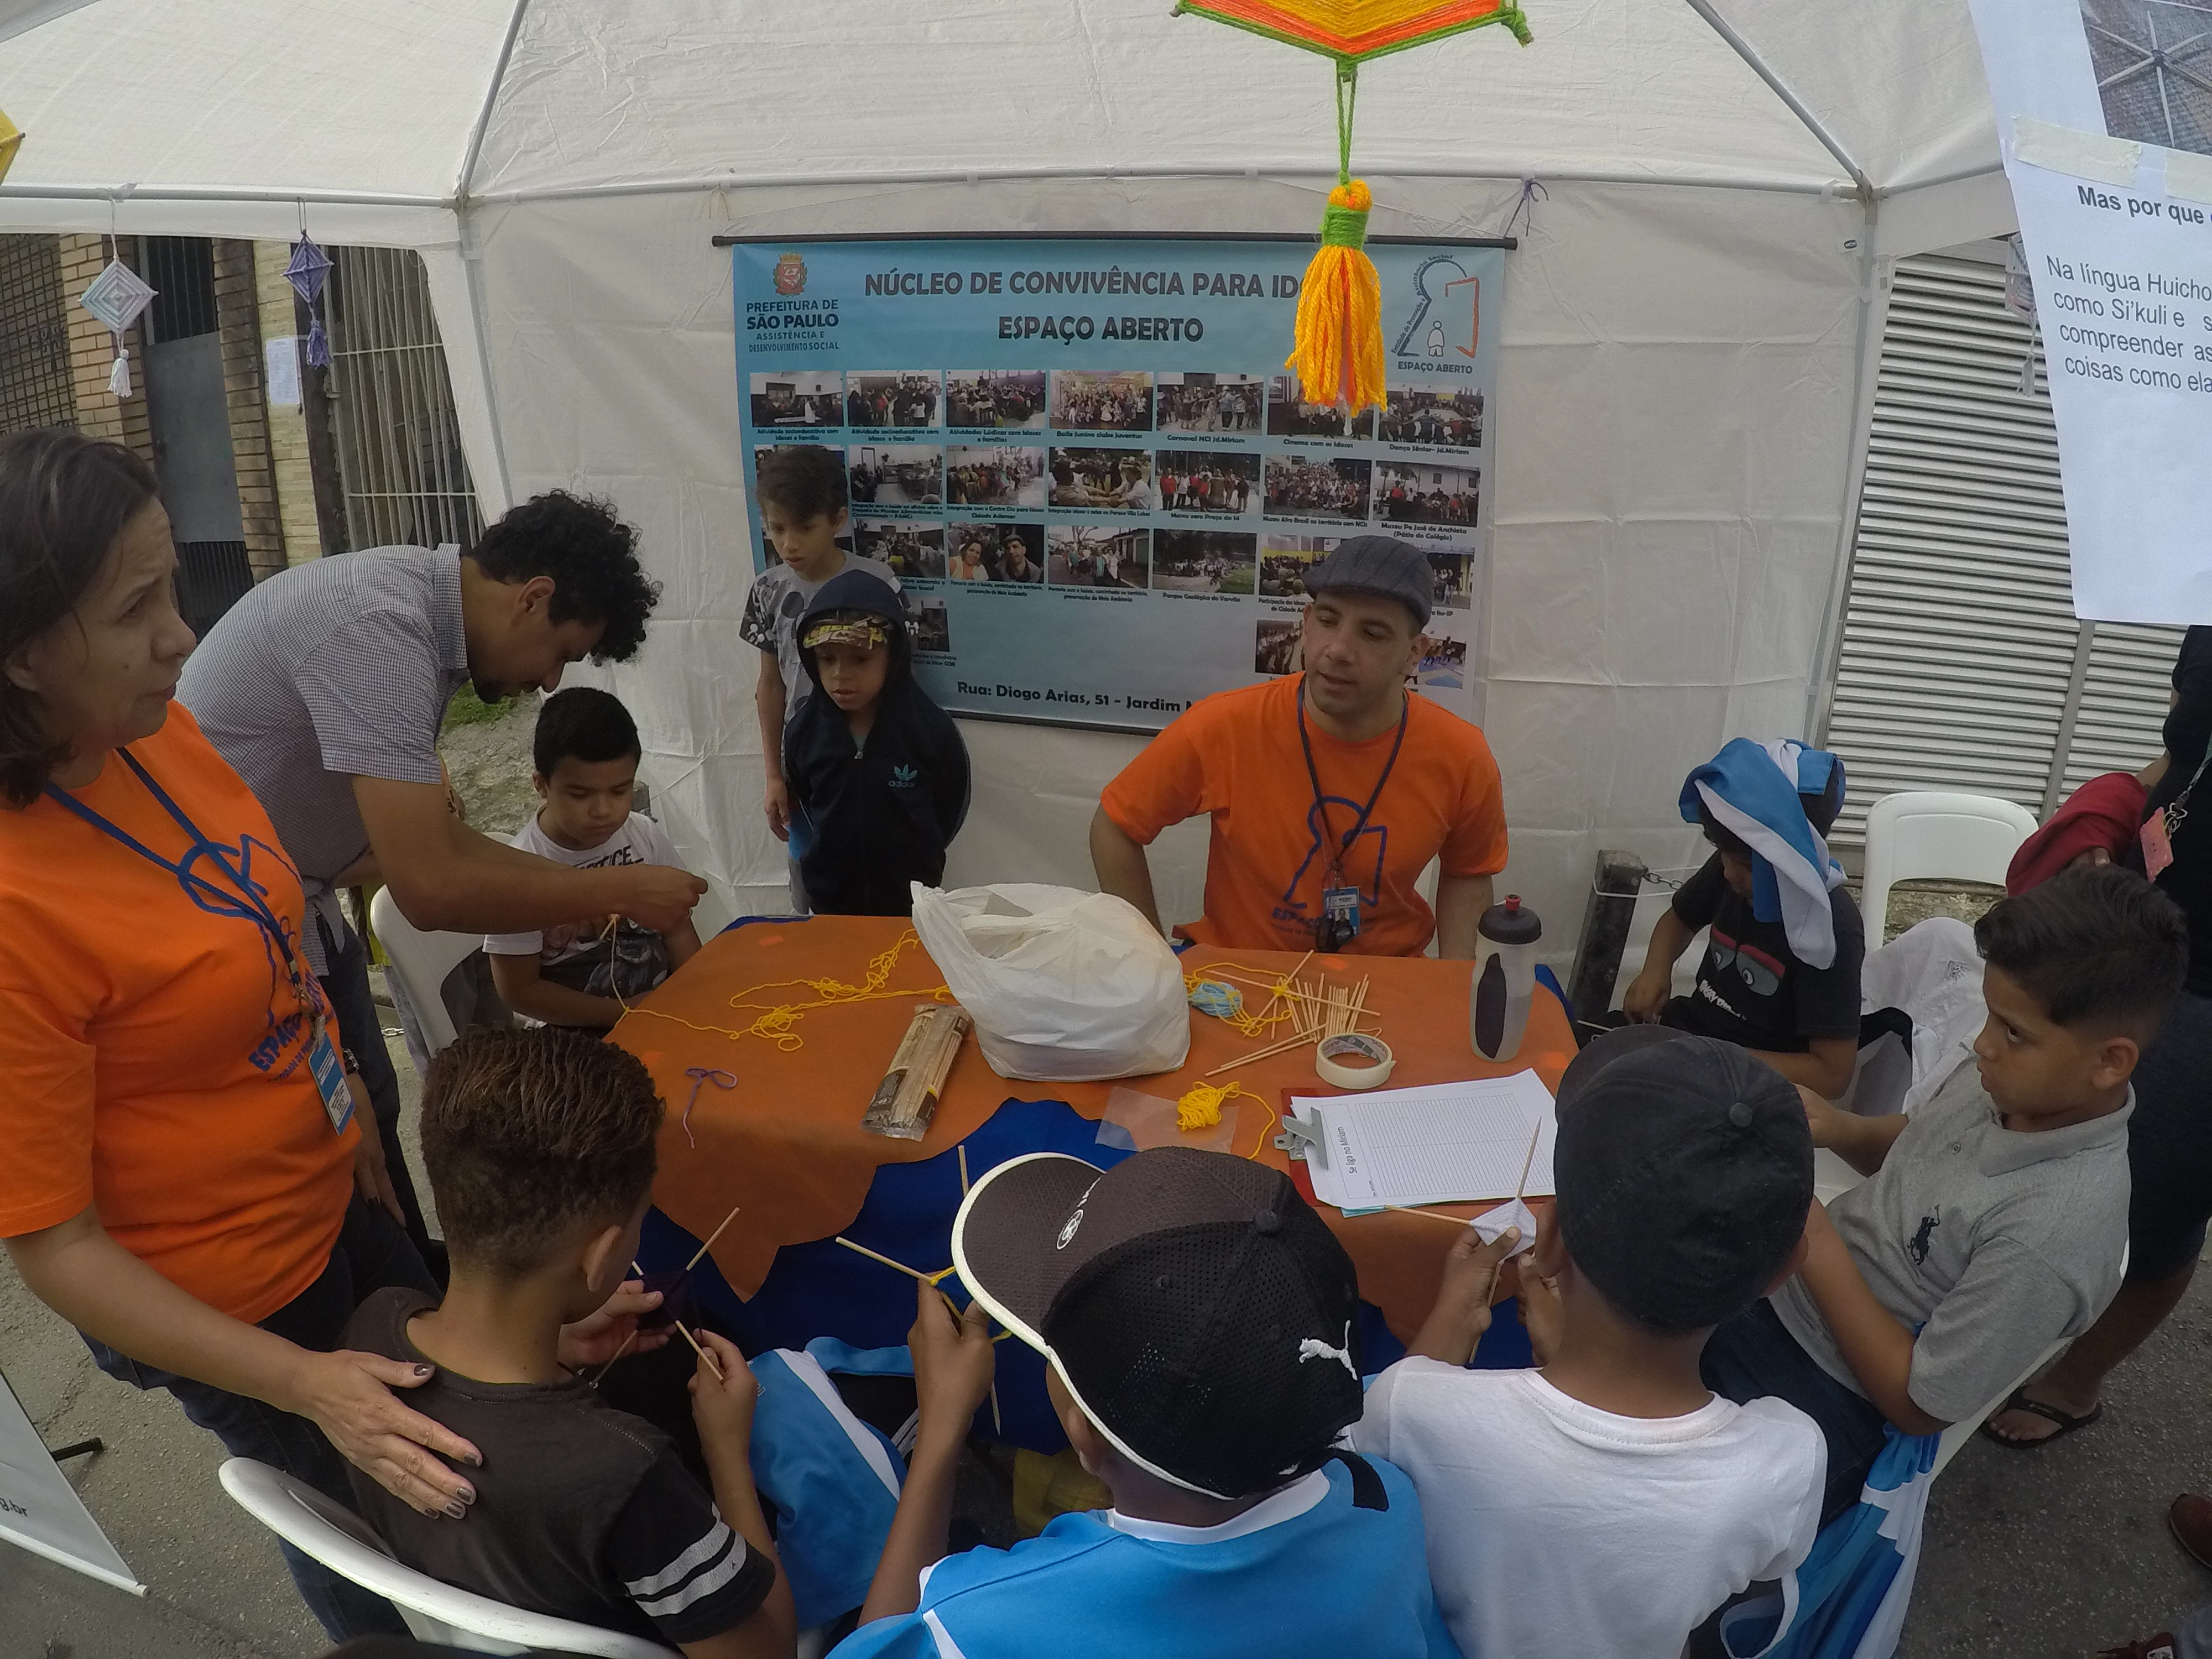 Dentro de uma tenda no evento, crianças estão com orientador realizando artesanato